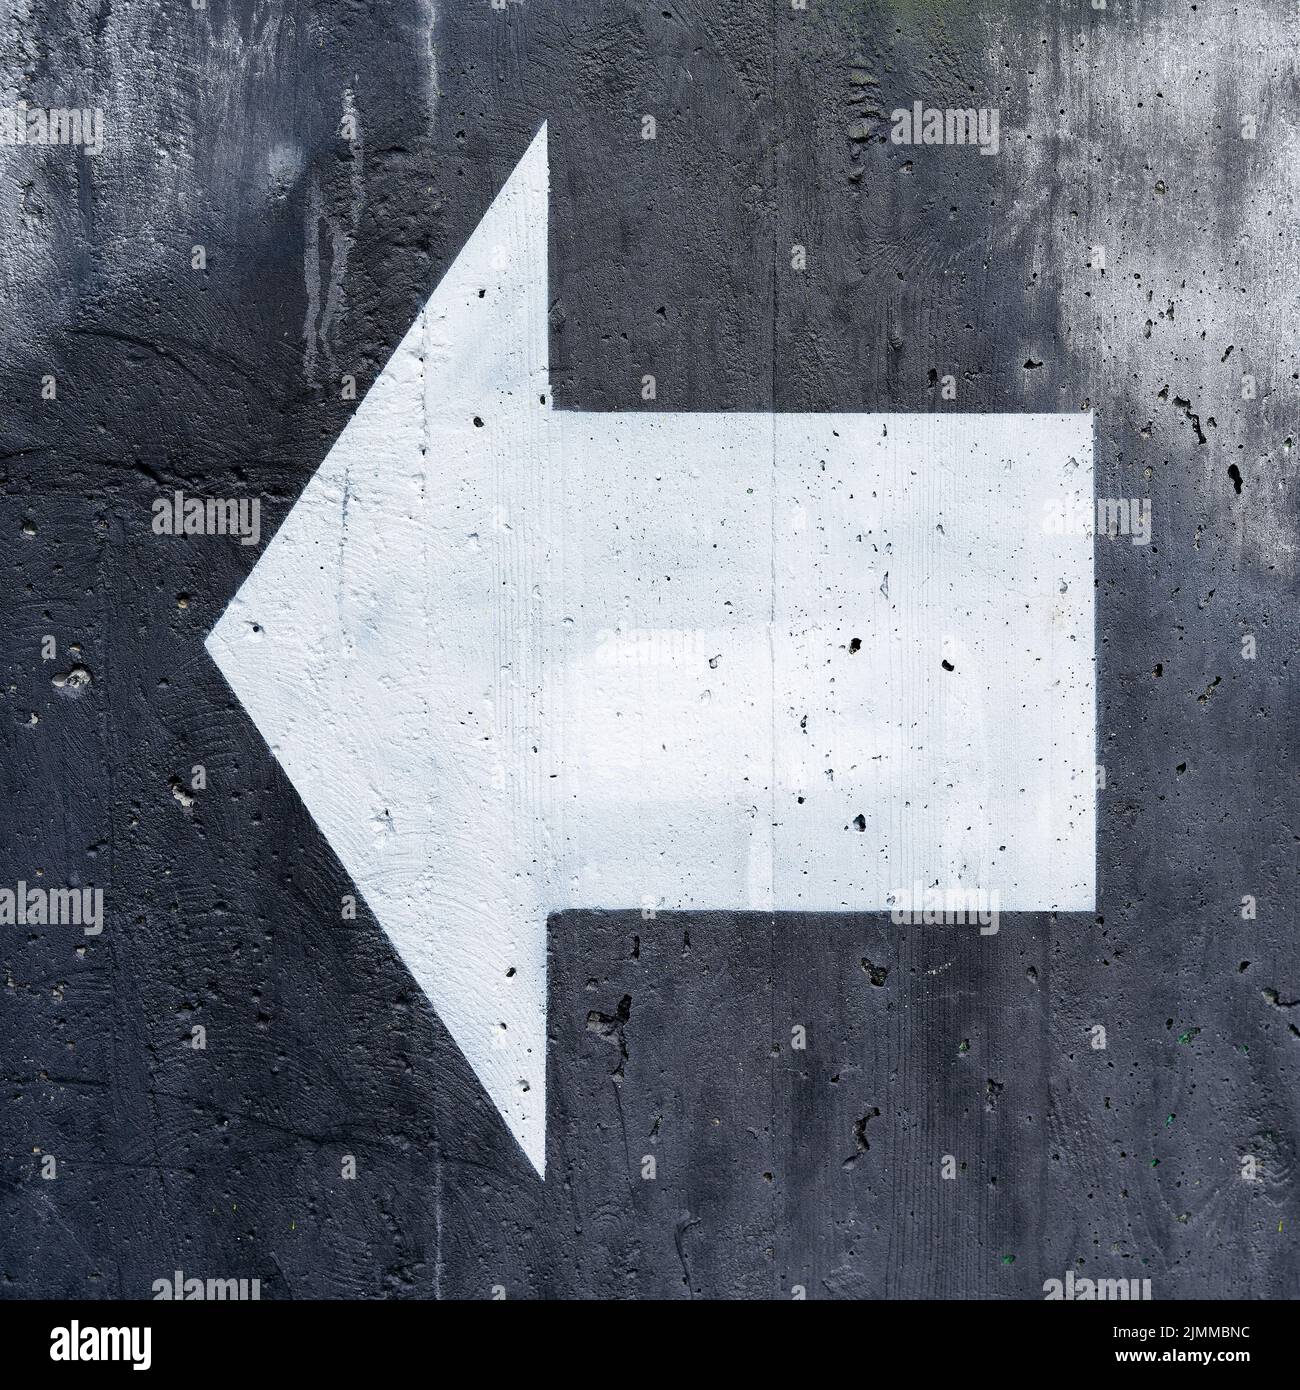 Flecha direccional blanca sobre fondo negro para orientación sobre paredes de hormigón Foto de stock